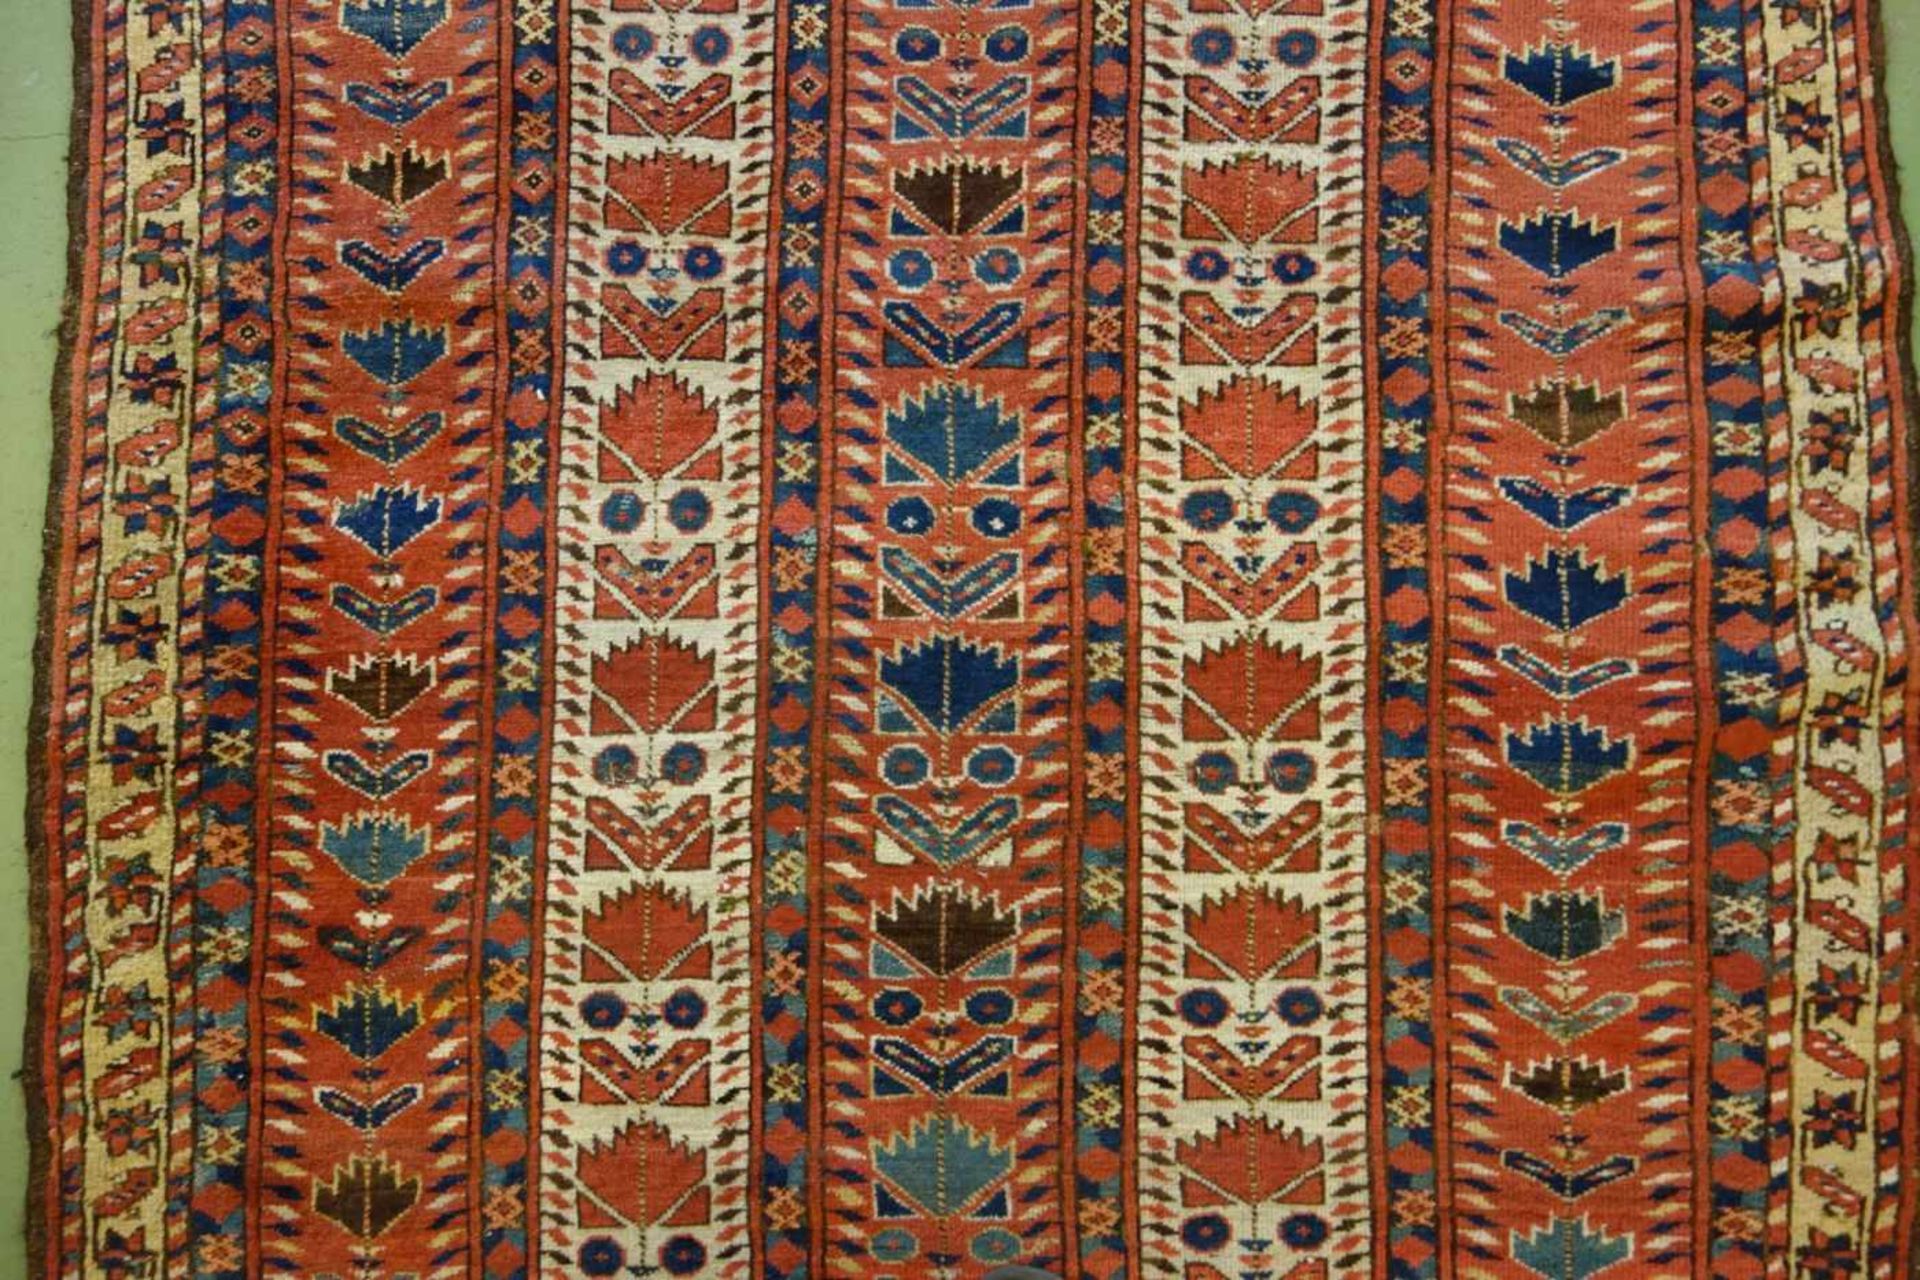 SCHMALER BESCHIR GEBETSTEPPICH / prayer rug, wohl 2. H. 19. Jh., Turkmenistan / Ersari-Beschir ( - Image 20 of 24